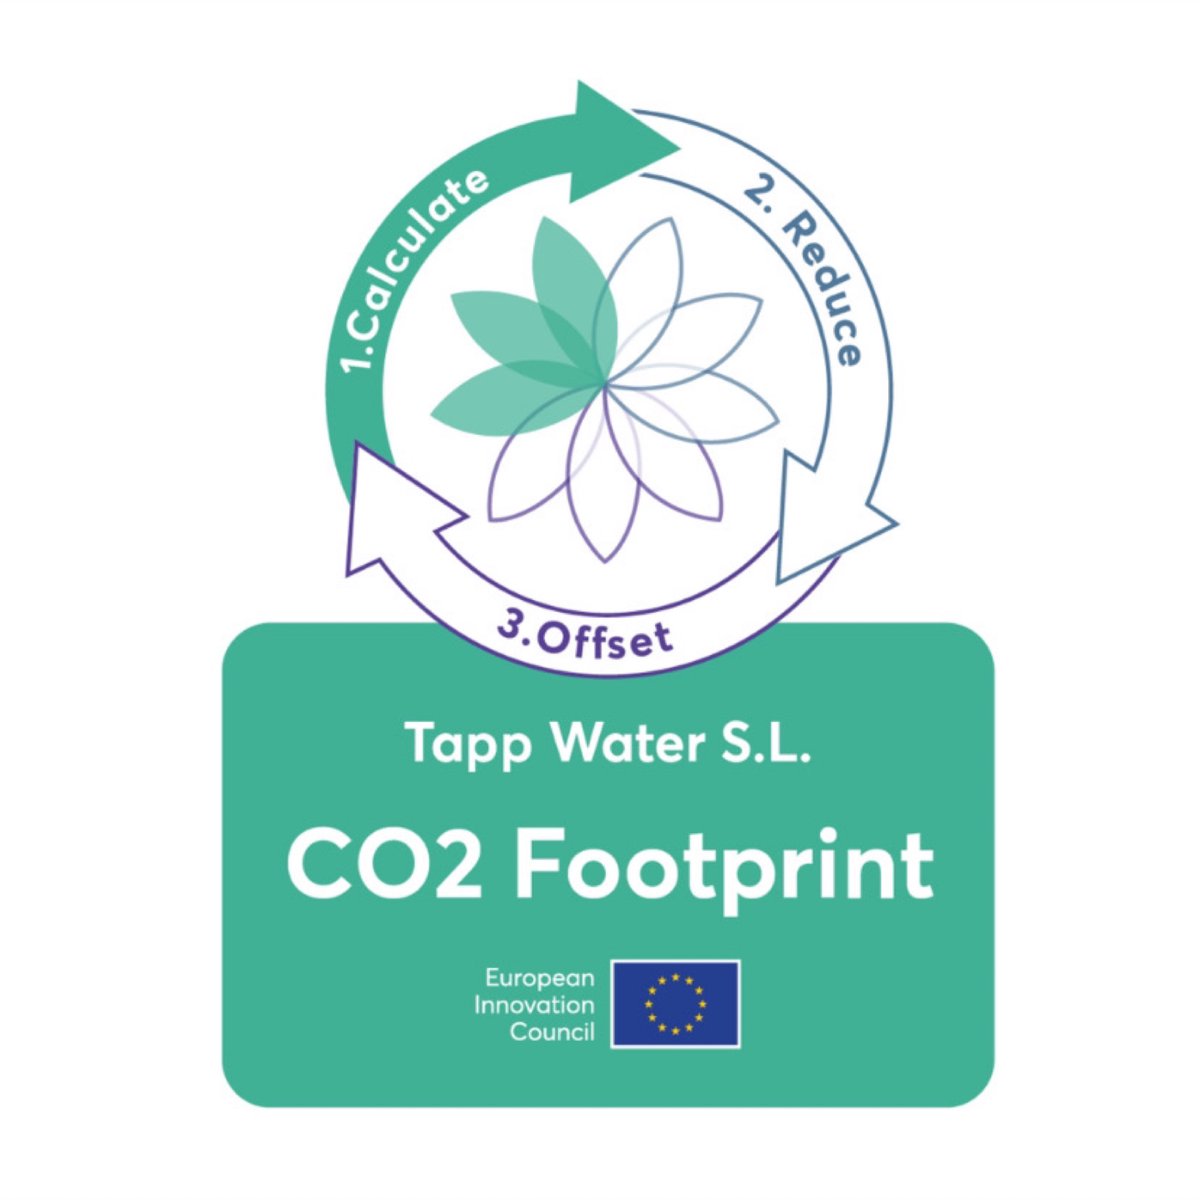 Muchas gracias @EUeic por otorgarnos esta insignia que reconoce que:⁠ ⁠ ✅ Hemos calculado correctamente nuestra huella de carbono.⁠ 💪🏼 Tenemos un plan para reducirla aún más.⁠ ⁠ #huella #carbono #huelladecarbono #impactopositivo #CO2 #CO2footprint #tappwater